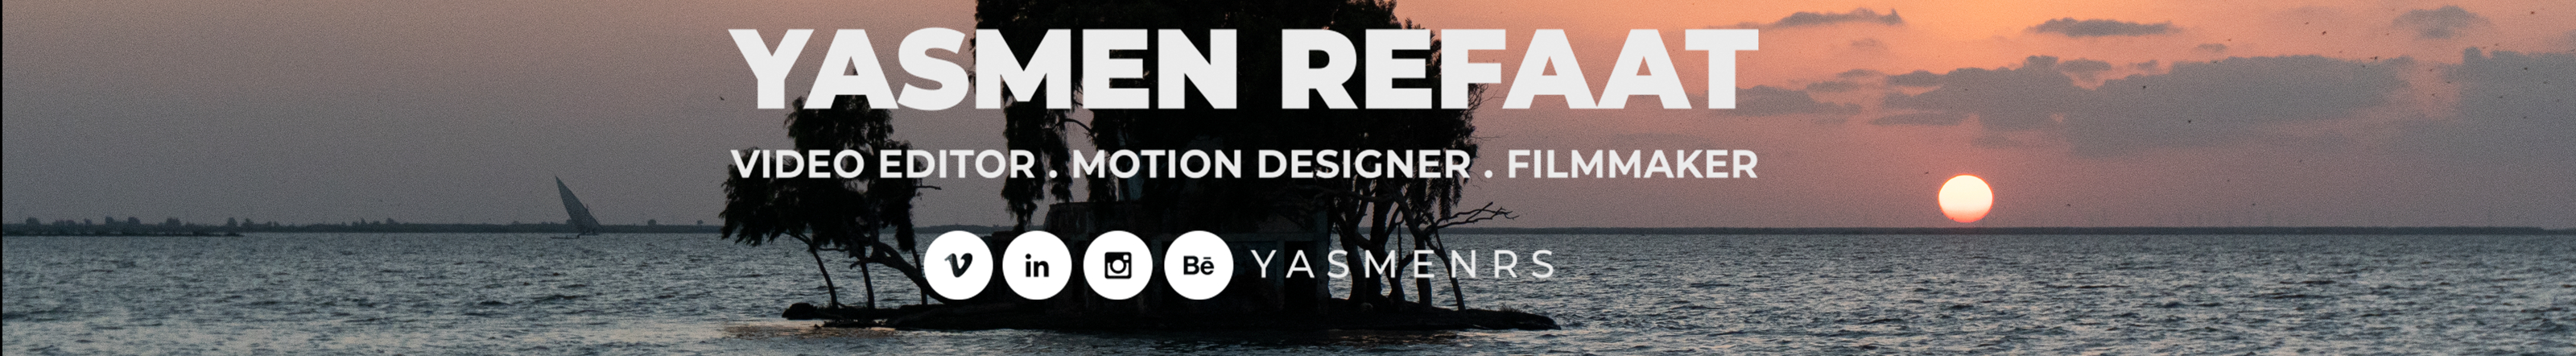 Yasmen Refaat El-Shaa'rawy's profile banner